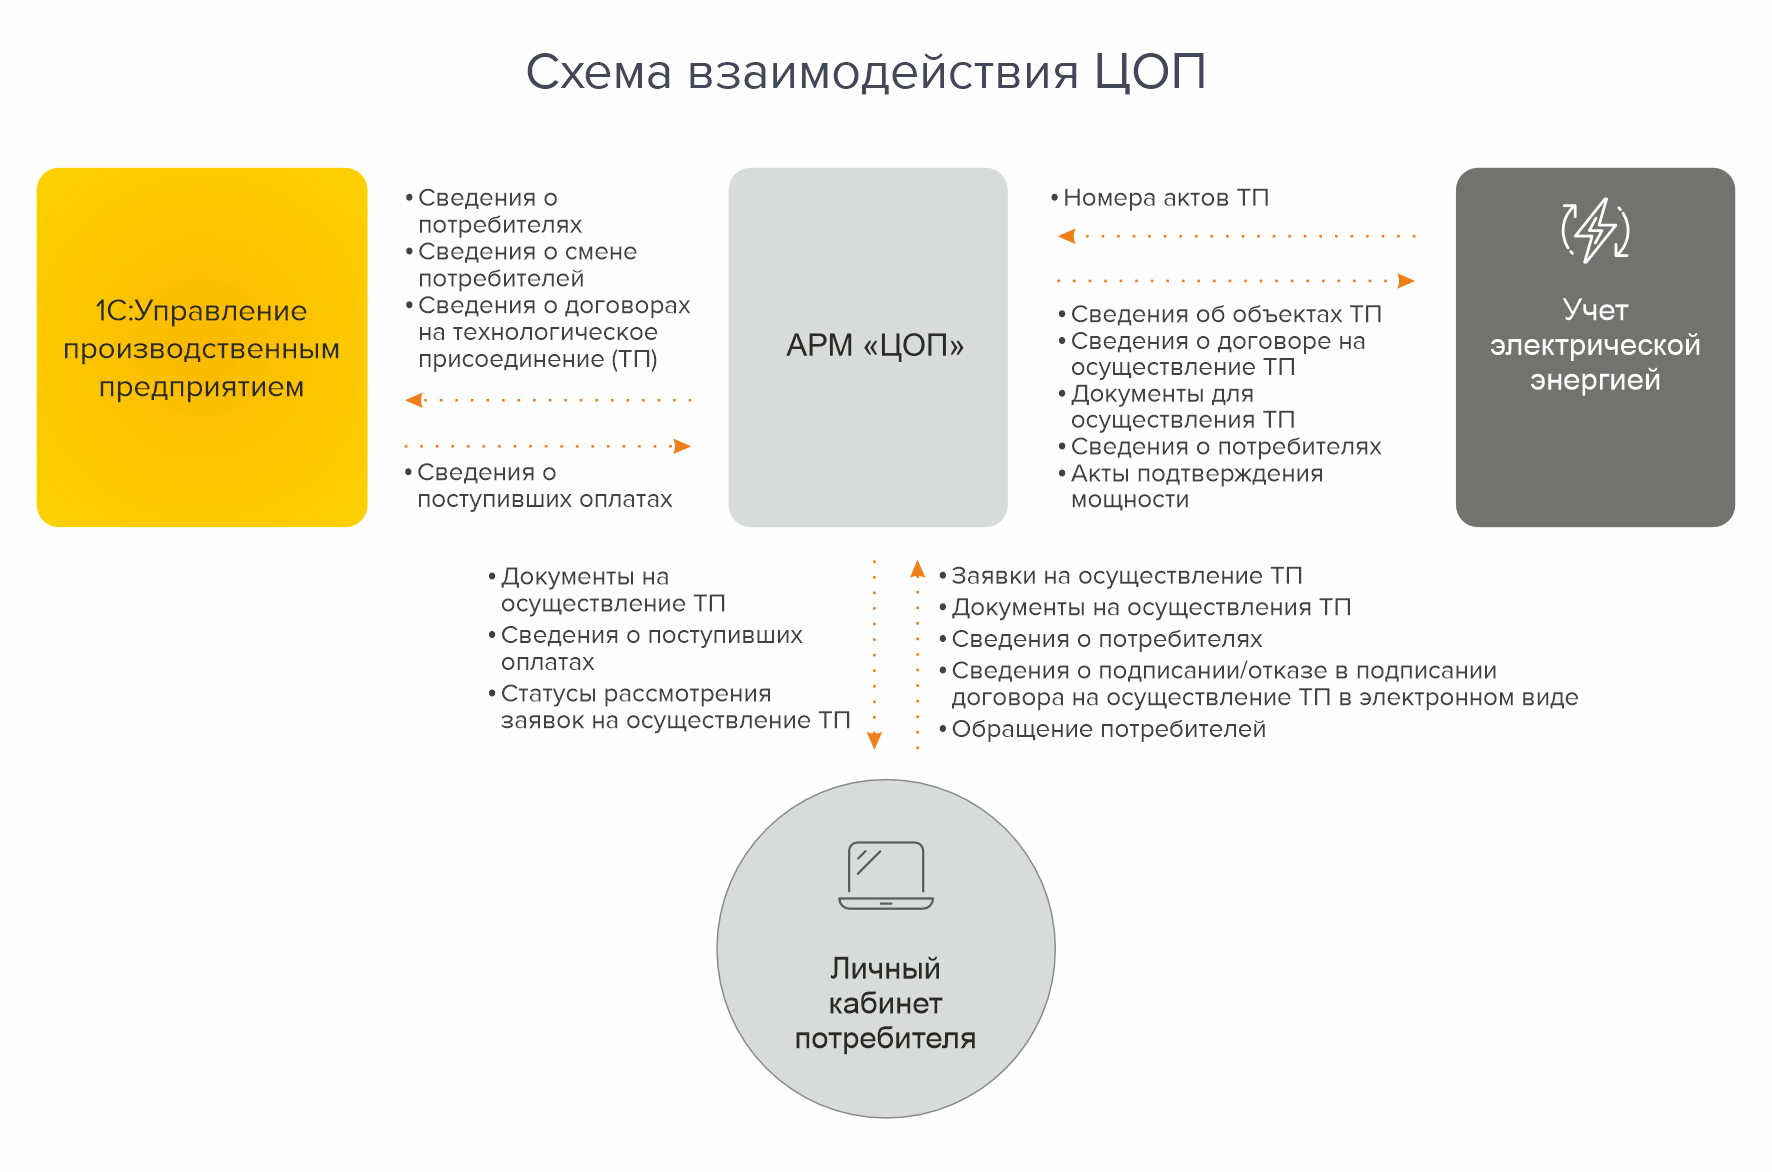 Схема цифровой системы «Самарской сетевой компании»